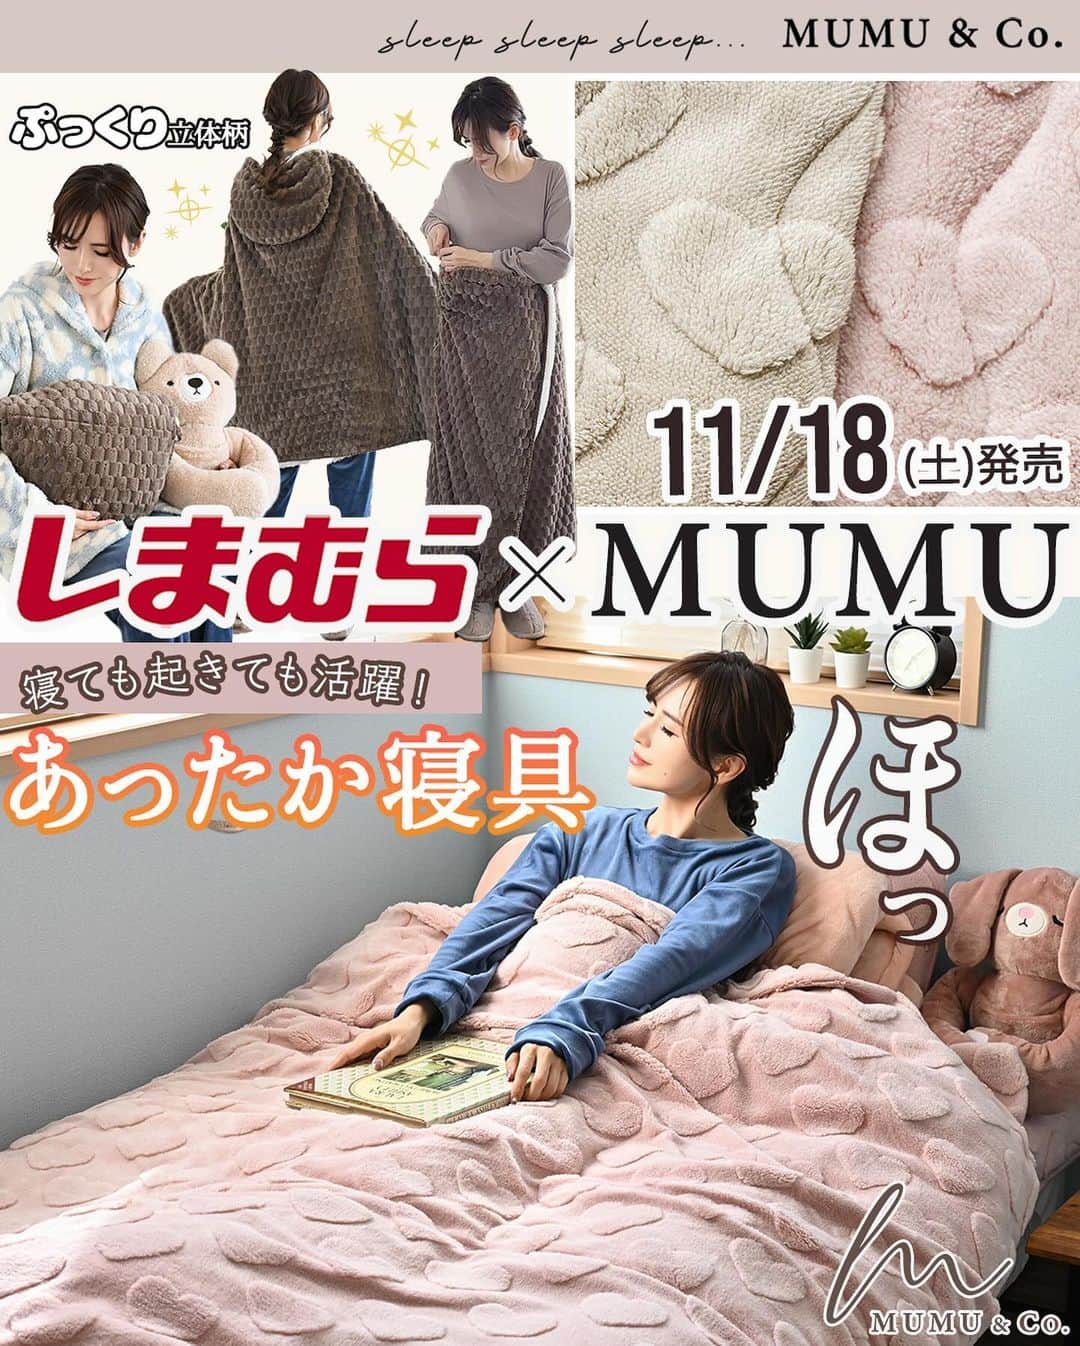 MUMUのインスタグラム：「🌙｡:* 11月18日（土）は #しまむら @grshimamura ×MUMUコラボの新作寝具も発売* あったかくて癒される、可愛いアイテムが完成しました💘  より詳しい内容は是非ブログをご覧いただけたら嬉しいです🙇‍♀️ 文字数制限の都合上、全て記載できなかったためコメント欄へ続きます📝  ＜販売店について＞ —— しまむら全店舗：11月18日（土）～ しまむらオンラインストア：11月18日（土）17時～ https://www.shop-shimamura.com/?b=shimamura ※八王子オクトーレ店・アルビ住道店・西友大船店・椎名町店・新田店・大森駅前店・久が原店・三軒茶屋店・高田馬場店では販売されません。 ——  昨年も大変ご好評いただいた冬の寝具に新作４型が登場♨️  暖かく肌触りがなめらかなフランネル素材を使用。 こだわりの柄はプリントではなく、凹凸で表現し、より付加価値の高いアイテムに！ 柄は２タイプ。 大きすぎず小さすぎず、様々なインテリアにマッチする「ぽこぽこ」と、大人ロマンティックな「ぷっくりハート」。 ぽこぽこのカラーは温かみのあるグレーとブラウン。 ハートのカラーは優しいピンクとベージュ。 どれを選んでも間違いのない可愛さ！ 見て触って癒される可愛いデザインに仕上げました😴  さらに今回のブランドネームは大人っぽい筆記体デザインにアップデート。 本体と同系色で統一し、ぐっと洗練された印象に。  枕パッド、敷きパッド、ブランケット、掛けふとんカバー、全てご自宅でのお洗濯が可能です◎ ※洗濯ネット推奨  １）枕パッド 税込539円 【品番】 ぽこぽこグレー：812-0239 ぽこぽこブラウン：812-0246	 ハート柄ピンク：812-0271  ハート柄ベージュ：812-0301  【サイズ】 43cm×63cm 【素材】 ポリエステル100％ フランネル  お手持ちの枕にワンタッチで簡単に装着できる枕パッド。 ふんわりぬくもりを感じられて日々の疲れを癒してくれます。 裏面には幅広のゴム付きで枕をしっかり固定できます。 ネームはサイドに小さく縫い付けました。  ２）敷きパッド 税込2,189円 【品番】 ぽこぽこグレー：811-0128	 ぽこぽこブラウン：811-0135	 ハート柄ピンク：811-0137  ハート柄ベージュ：811-0140  【サイズ】 100cm×205cm（シングル） 【素材】 ポリエステル100％ フランネル   寒い夜も冷んやりしないほっとする暖かさ♪ シングルサイズの敷きパッド。 シングルマットレスや敷きふとんの上に敷いてお使いいただけます。  わた入りでやわらかくあったか* ふわふわ心地よい肌触りです。  四隅のやわらかゴムバンドでつけはずしもラクちん。 太めのゴムだからズレにくく安心です。 ネームはスクエア型* 敷きパッドを1枚追加するだけで寝心地もアップ！ ソファカバーとしてもオススメです*  ３）フード付4wayブランケット 税込2,189円 【品番】 ぽこぽこグレー：806-0226 ぽこぽこブラウン：806-0228 ハート柄ピンク：806-0232  ハート柄ベージュ：806-0234 【サイズ】 100cm×140cm 【素材】 ポリエステル100％ フランネル  就寝中も日中も！ 一日中愛用できる４wayブランケットを作りました* 裏面はシープボア調で暖か〜〜い♪ ネームはこちらもスクエア型でオシャレなワンポイントに。  ①ひざ掛けとして 横に広げてふわっとひざにかけて。 フード部分の裏地もボアだから、手を入れるポケットとして使用すればとっても暖か*  ②ポンチョとして 肩にかけてボタンを留めればポンチョとしても◎  ③こし巻きとして くるっとウエストに巻けば腰回りもポカポカ。 下半身を丸ごと包み込んでくれて脚の冷えを防止してくれます。  ④クッションとして くるっと丸めてフード部分に入れ込めばクッションとしても！ 普段はクッションとして使用し、寒くなればブランケットに早変わり！ 収納に困らない便利アイテムです。 . #PR #プチプラコーデ #instagood #プチプラ #おうち時間 #instalike #服好きな人と繋がりたい #ootd #fashion #MUMU #流行 #しまむらコーデ #しまパト #寝室 #grshimamura #しまむら購入品  #outfit #しまスタ #プチプラファッション #mumuニスタ #mumuコラボ #布団カバー #寝具」